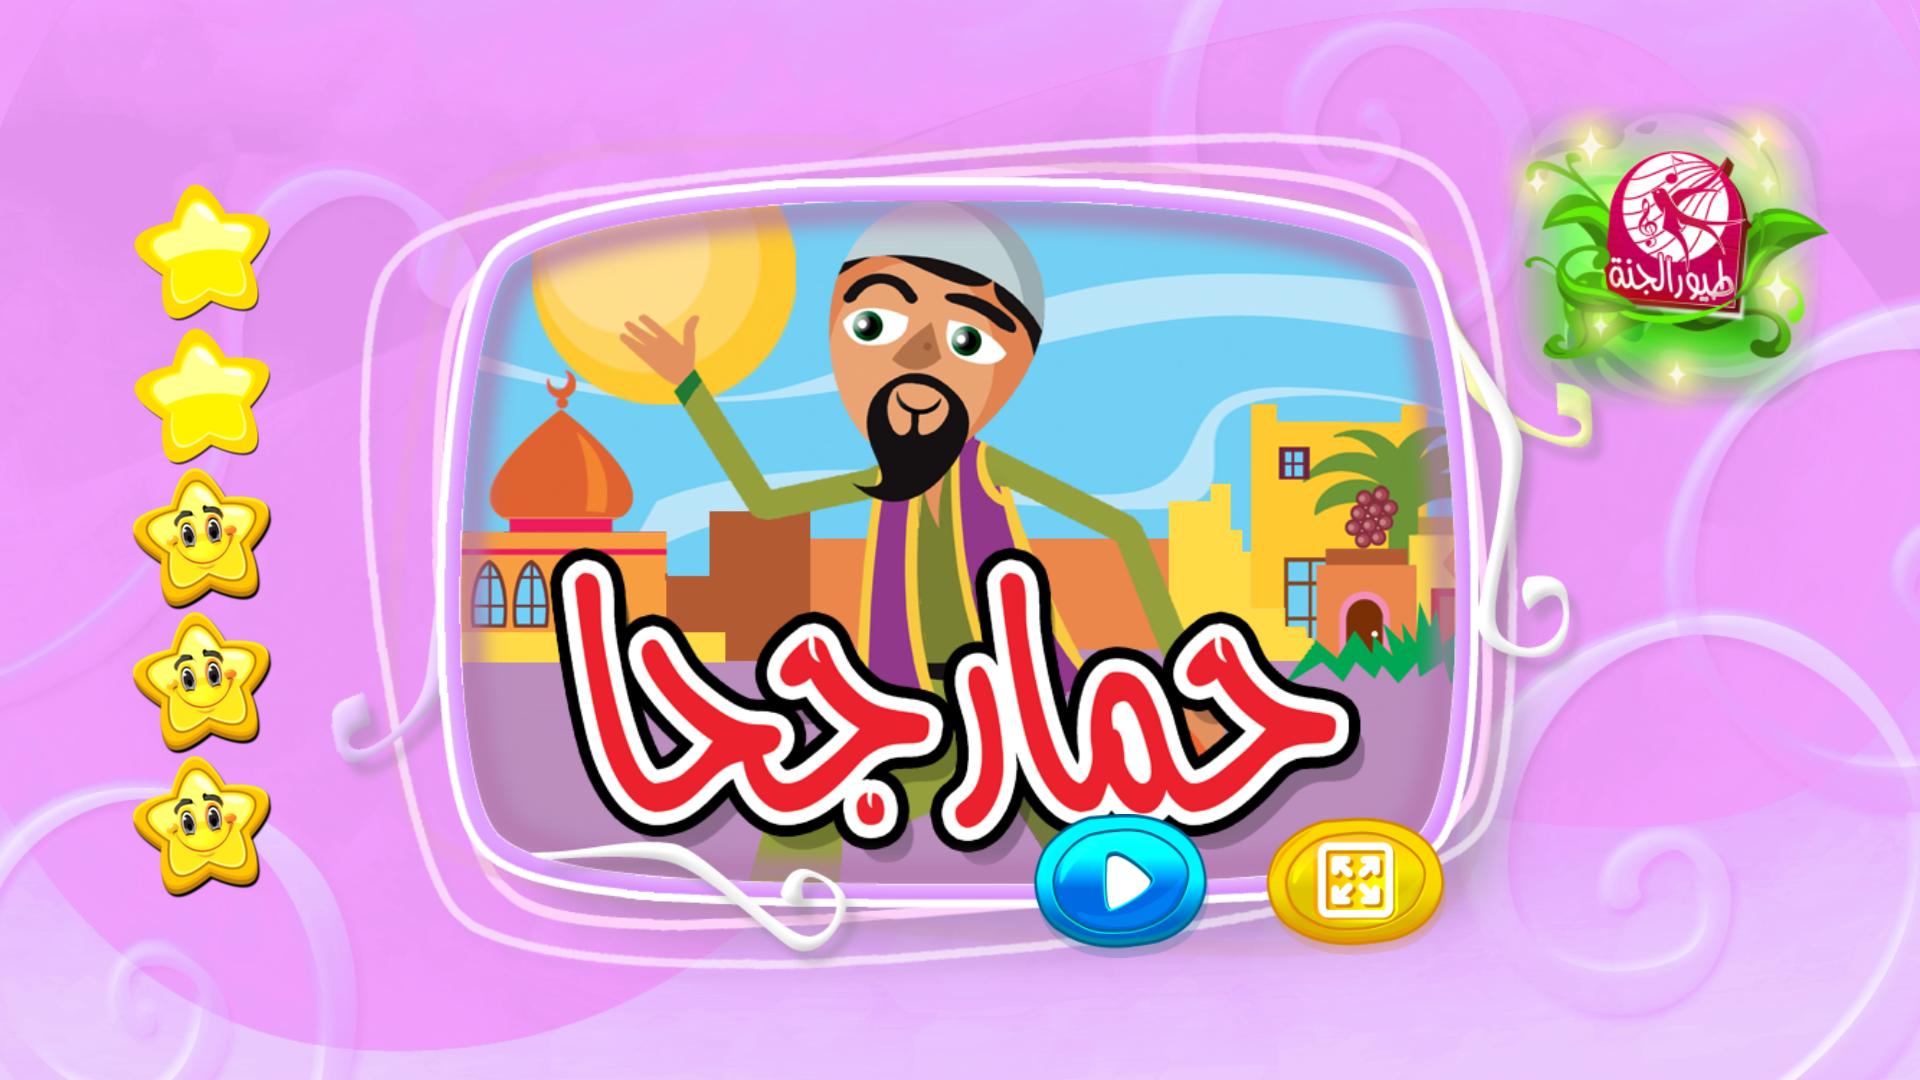 حمار جحا بدون انترنت for android apk download